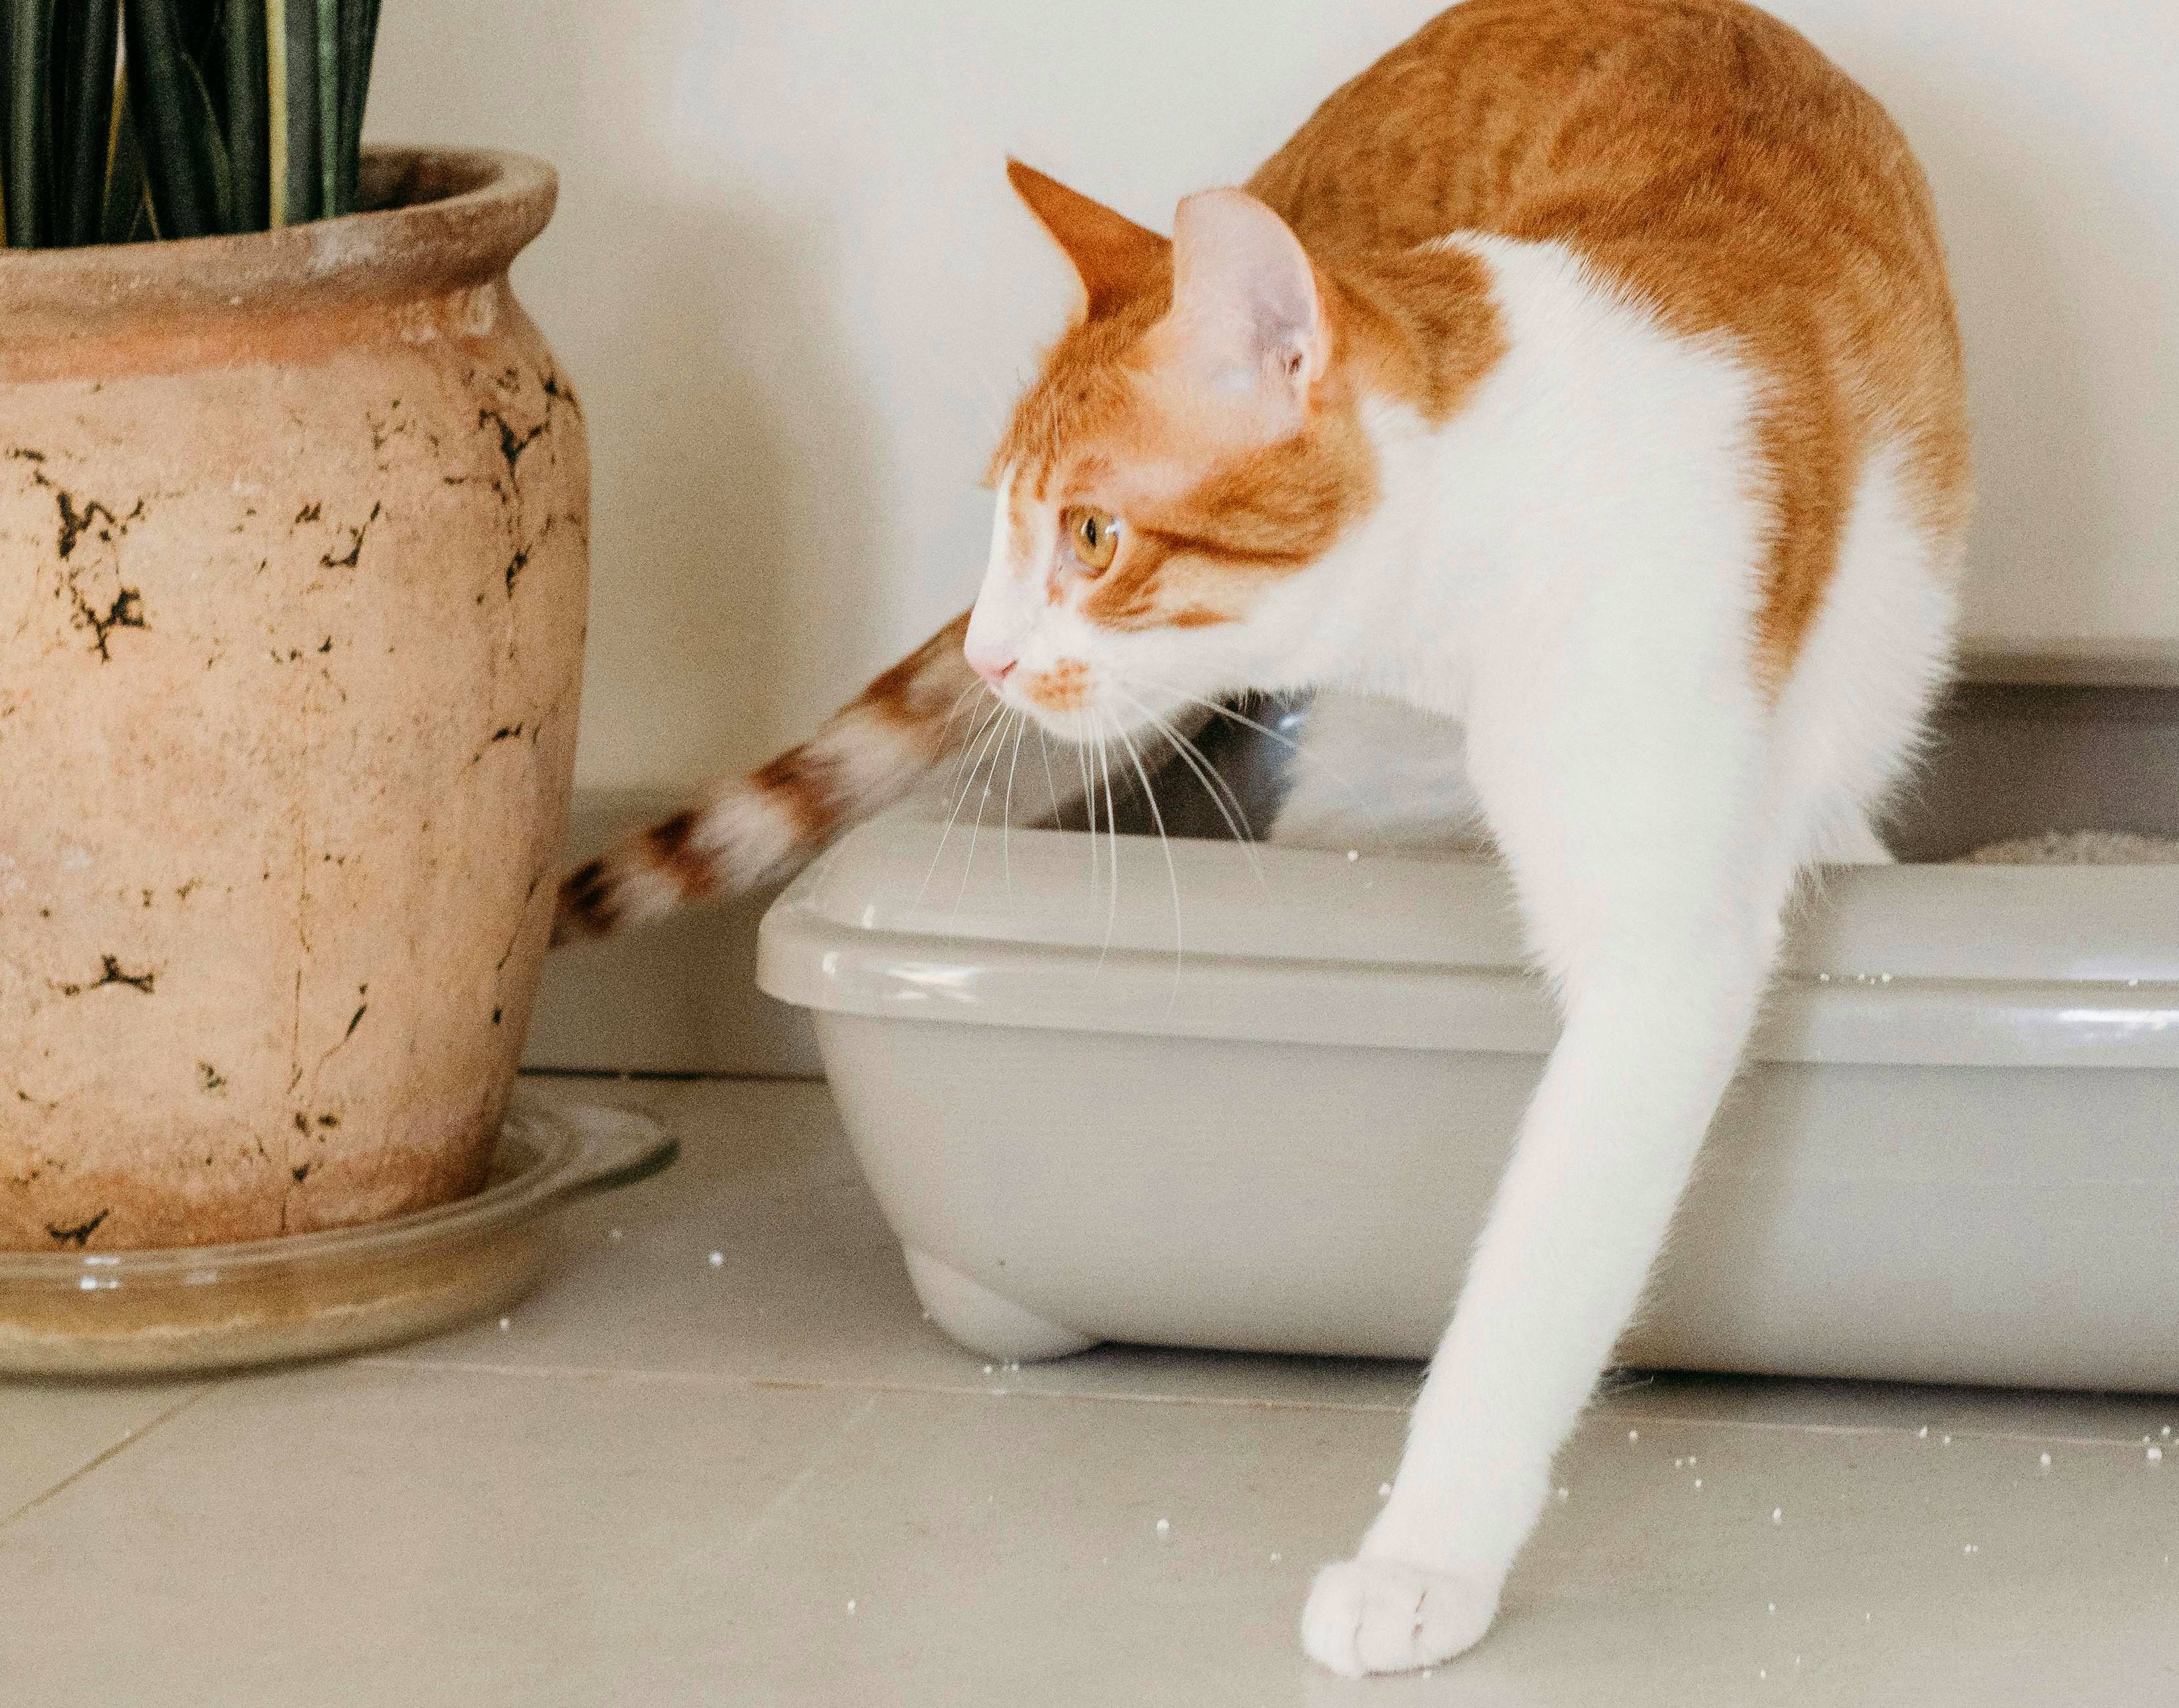 Кот мяукает во время похода в туалет: есть ли повод для обращения к ветеринару